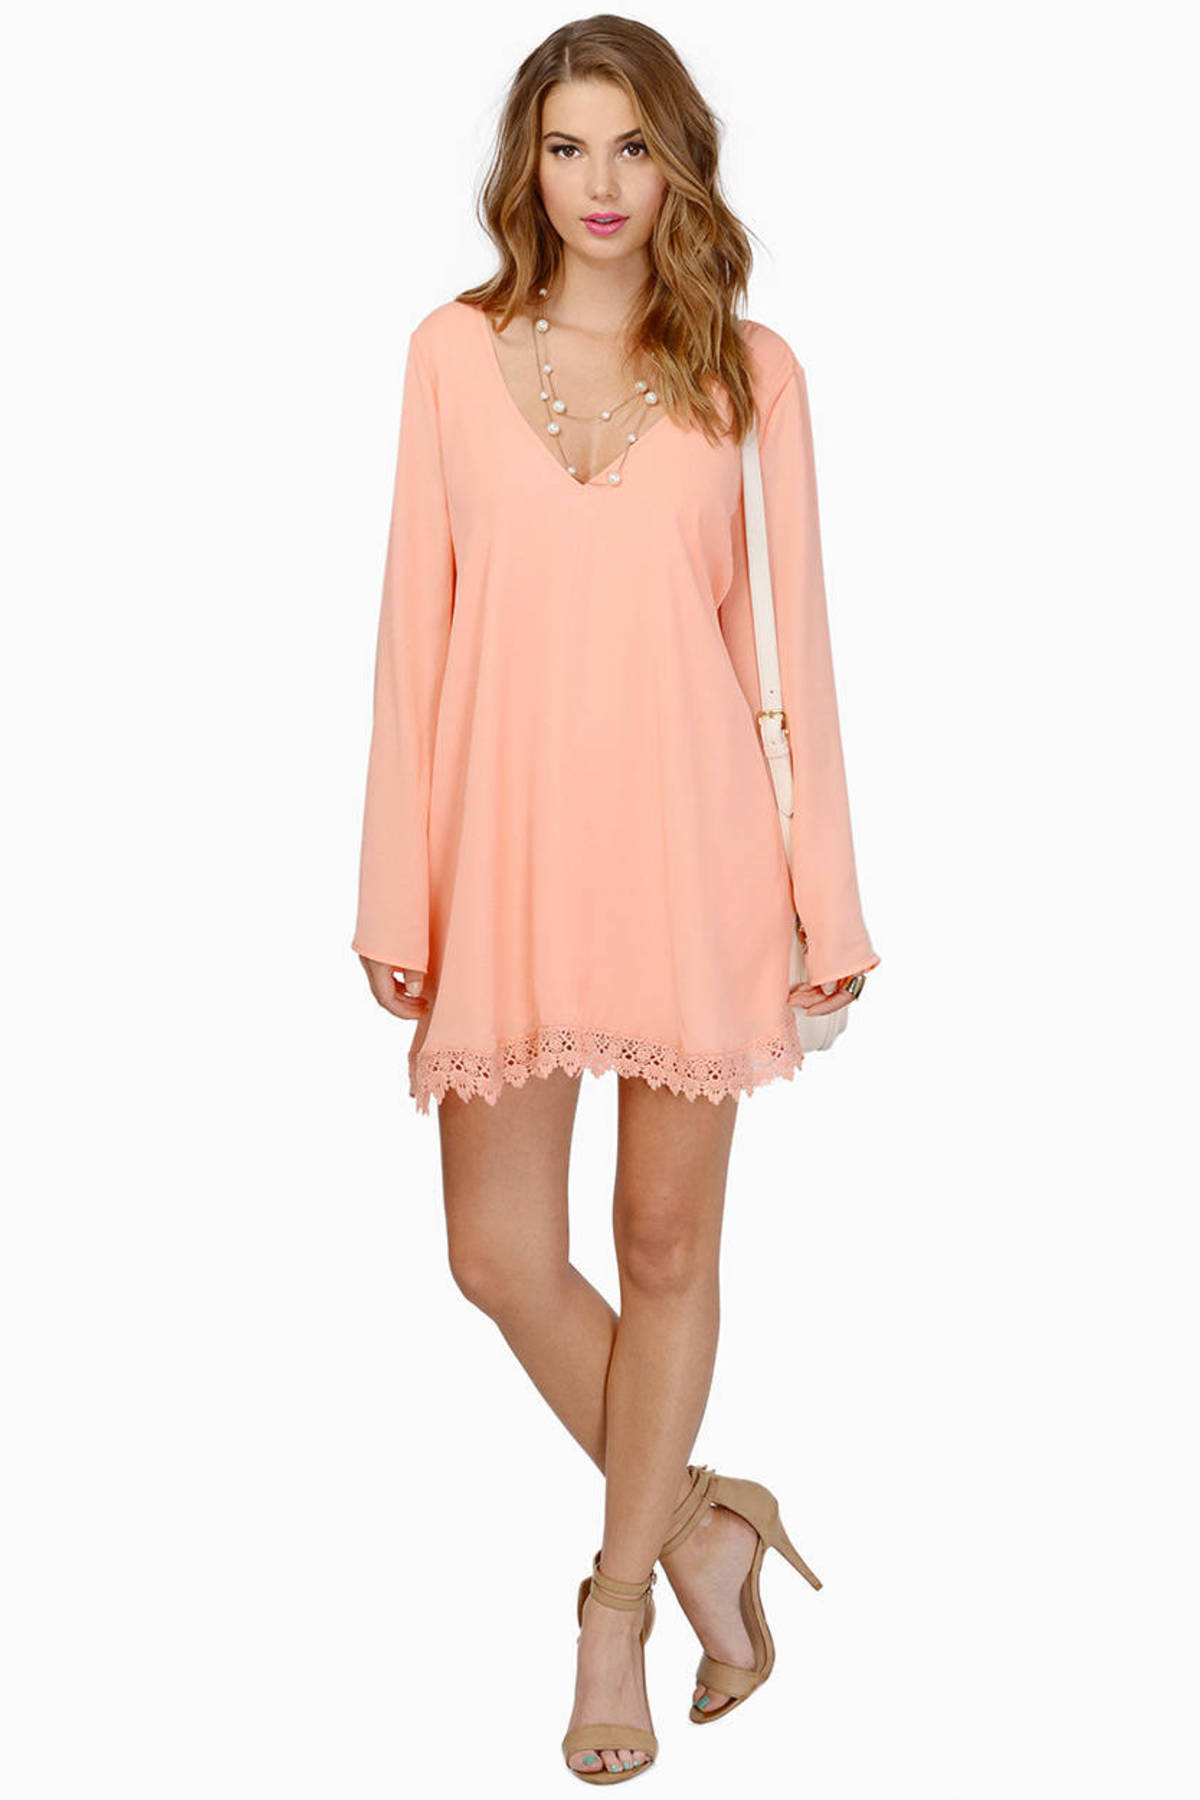 Cherie Dress in Coral - $62 | Tobi US